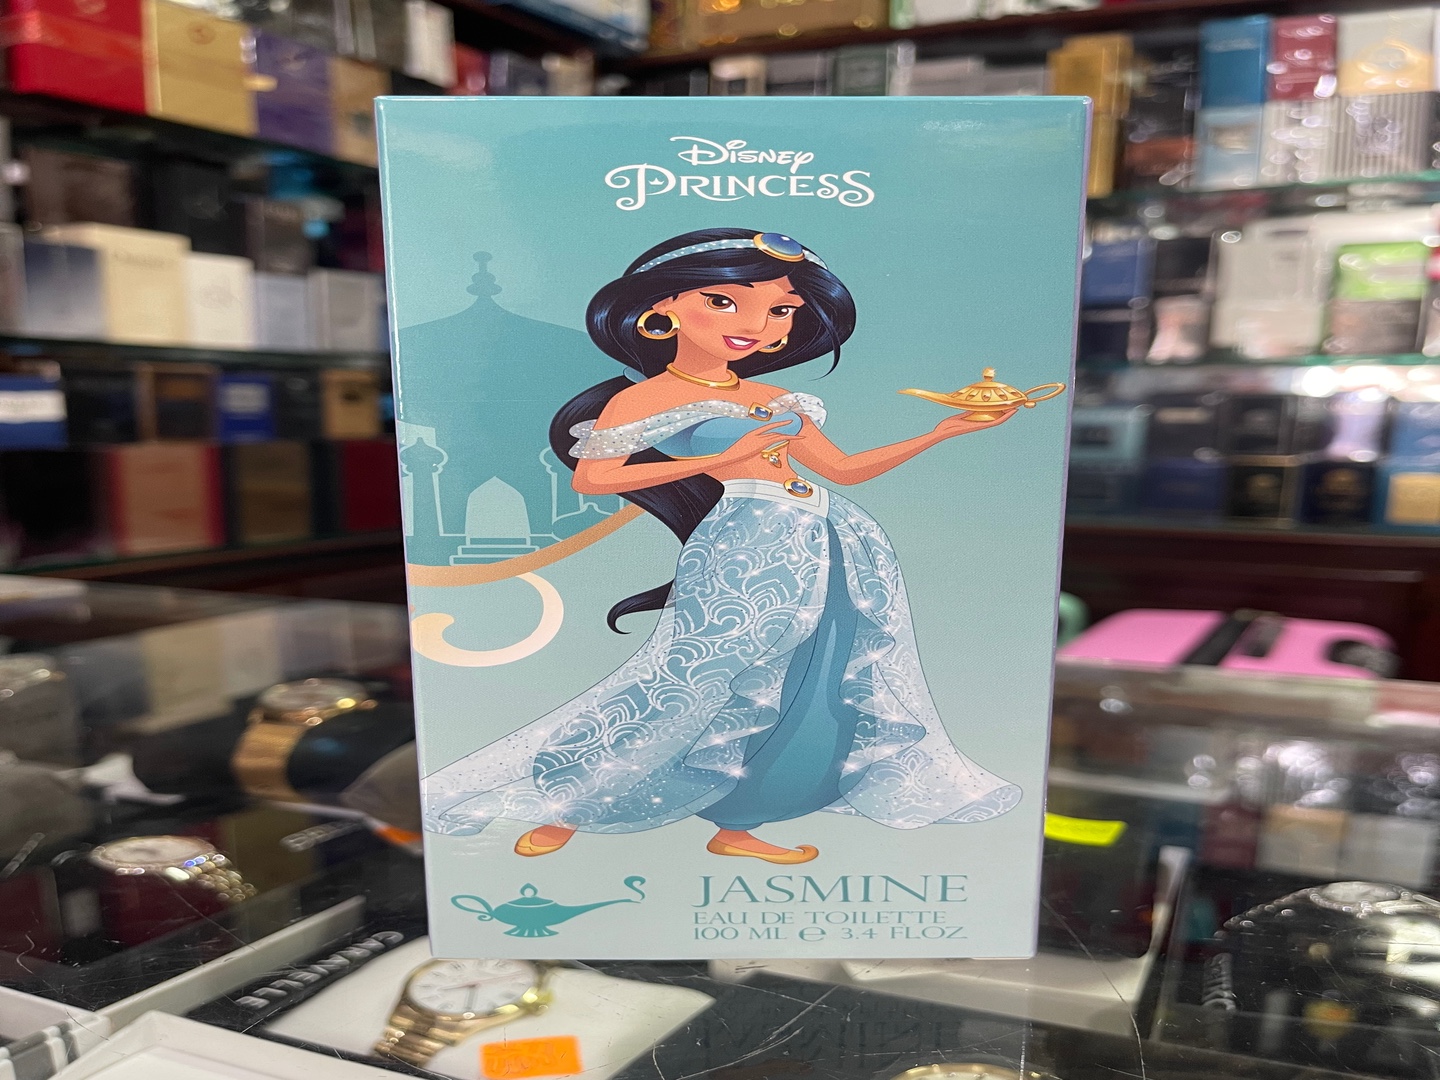 accesorios - Perfume Disney Princess “Jazmín” 3.4OZ - AL POR MAYOR Y AL DETALLE 0